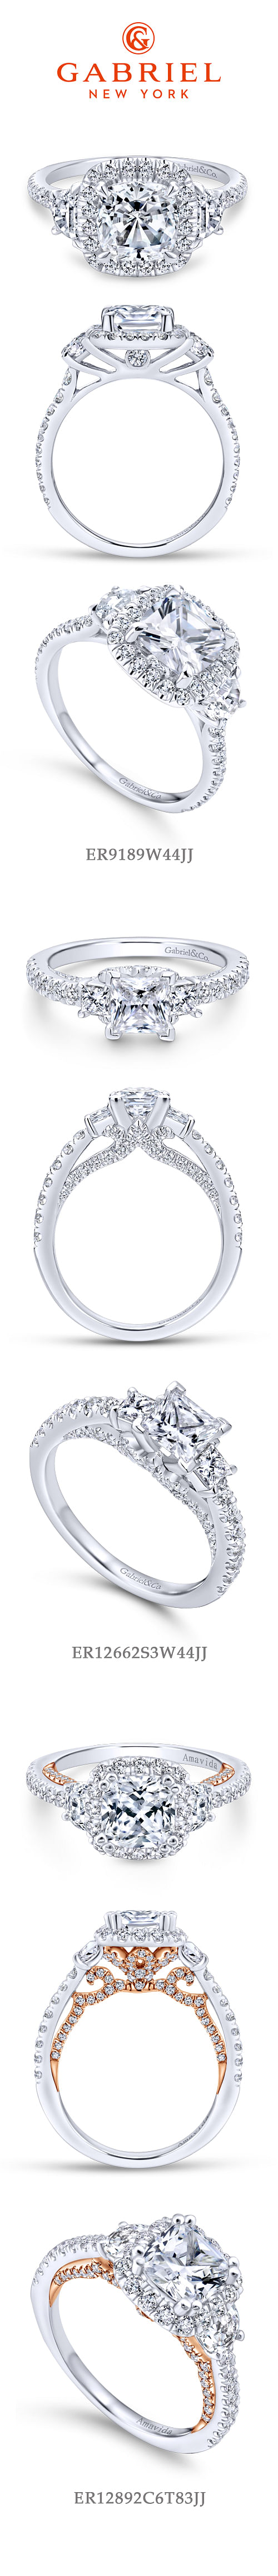 14K White Gold Cushion Three Stone Halo Diamond Engagement Ring angle 